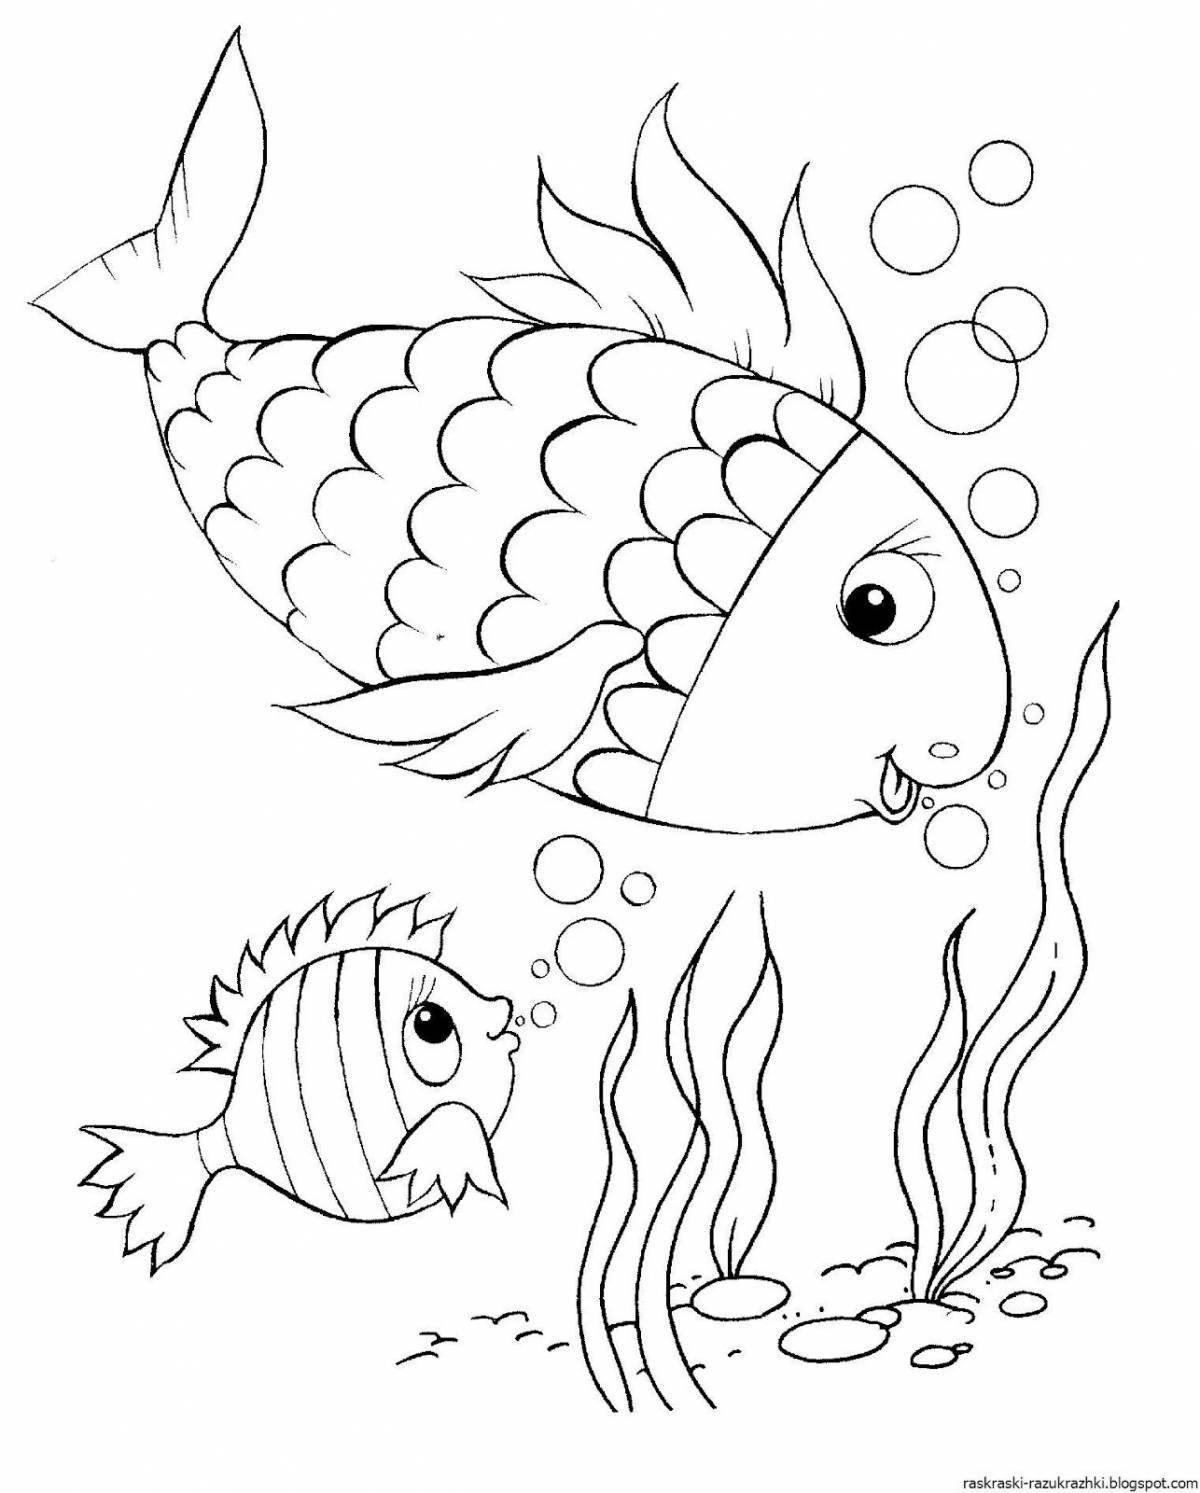 Раскраска сладкая рыбка для детей 3-4 лет